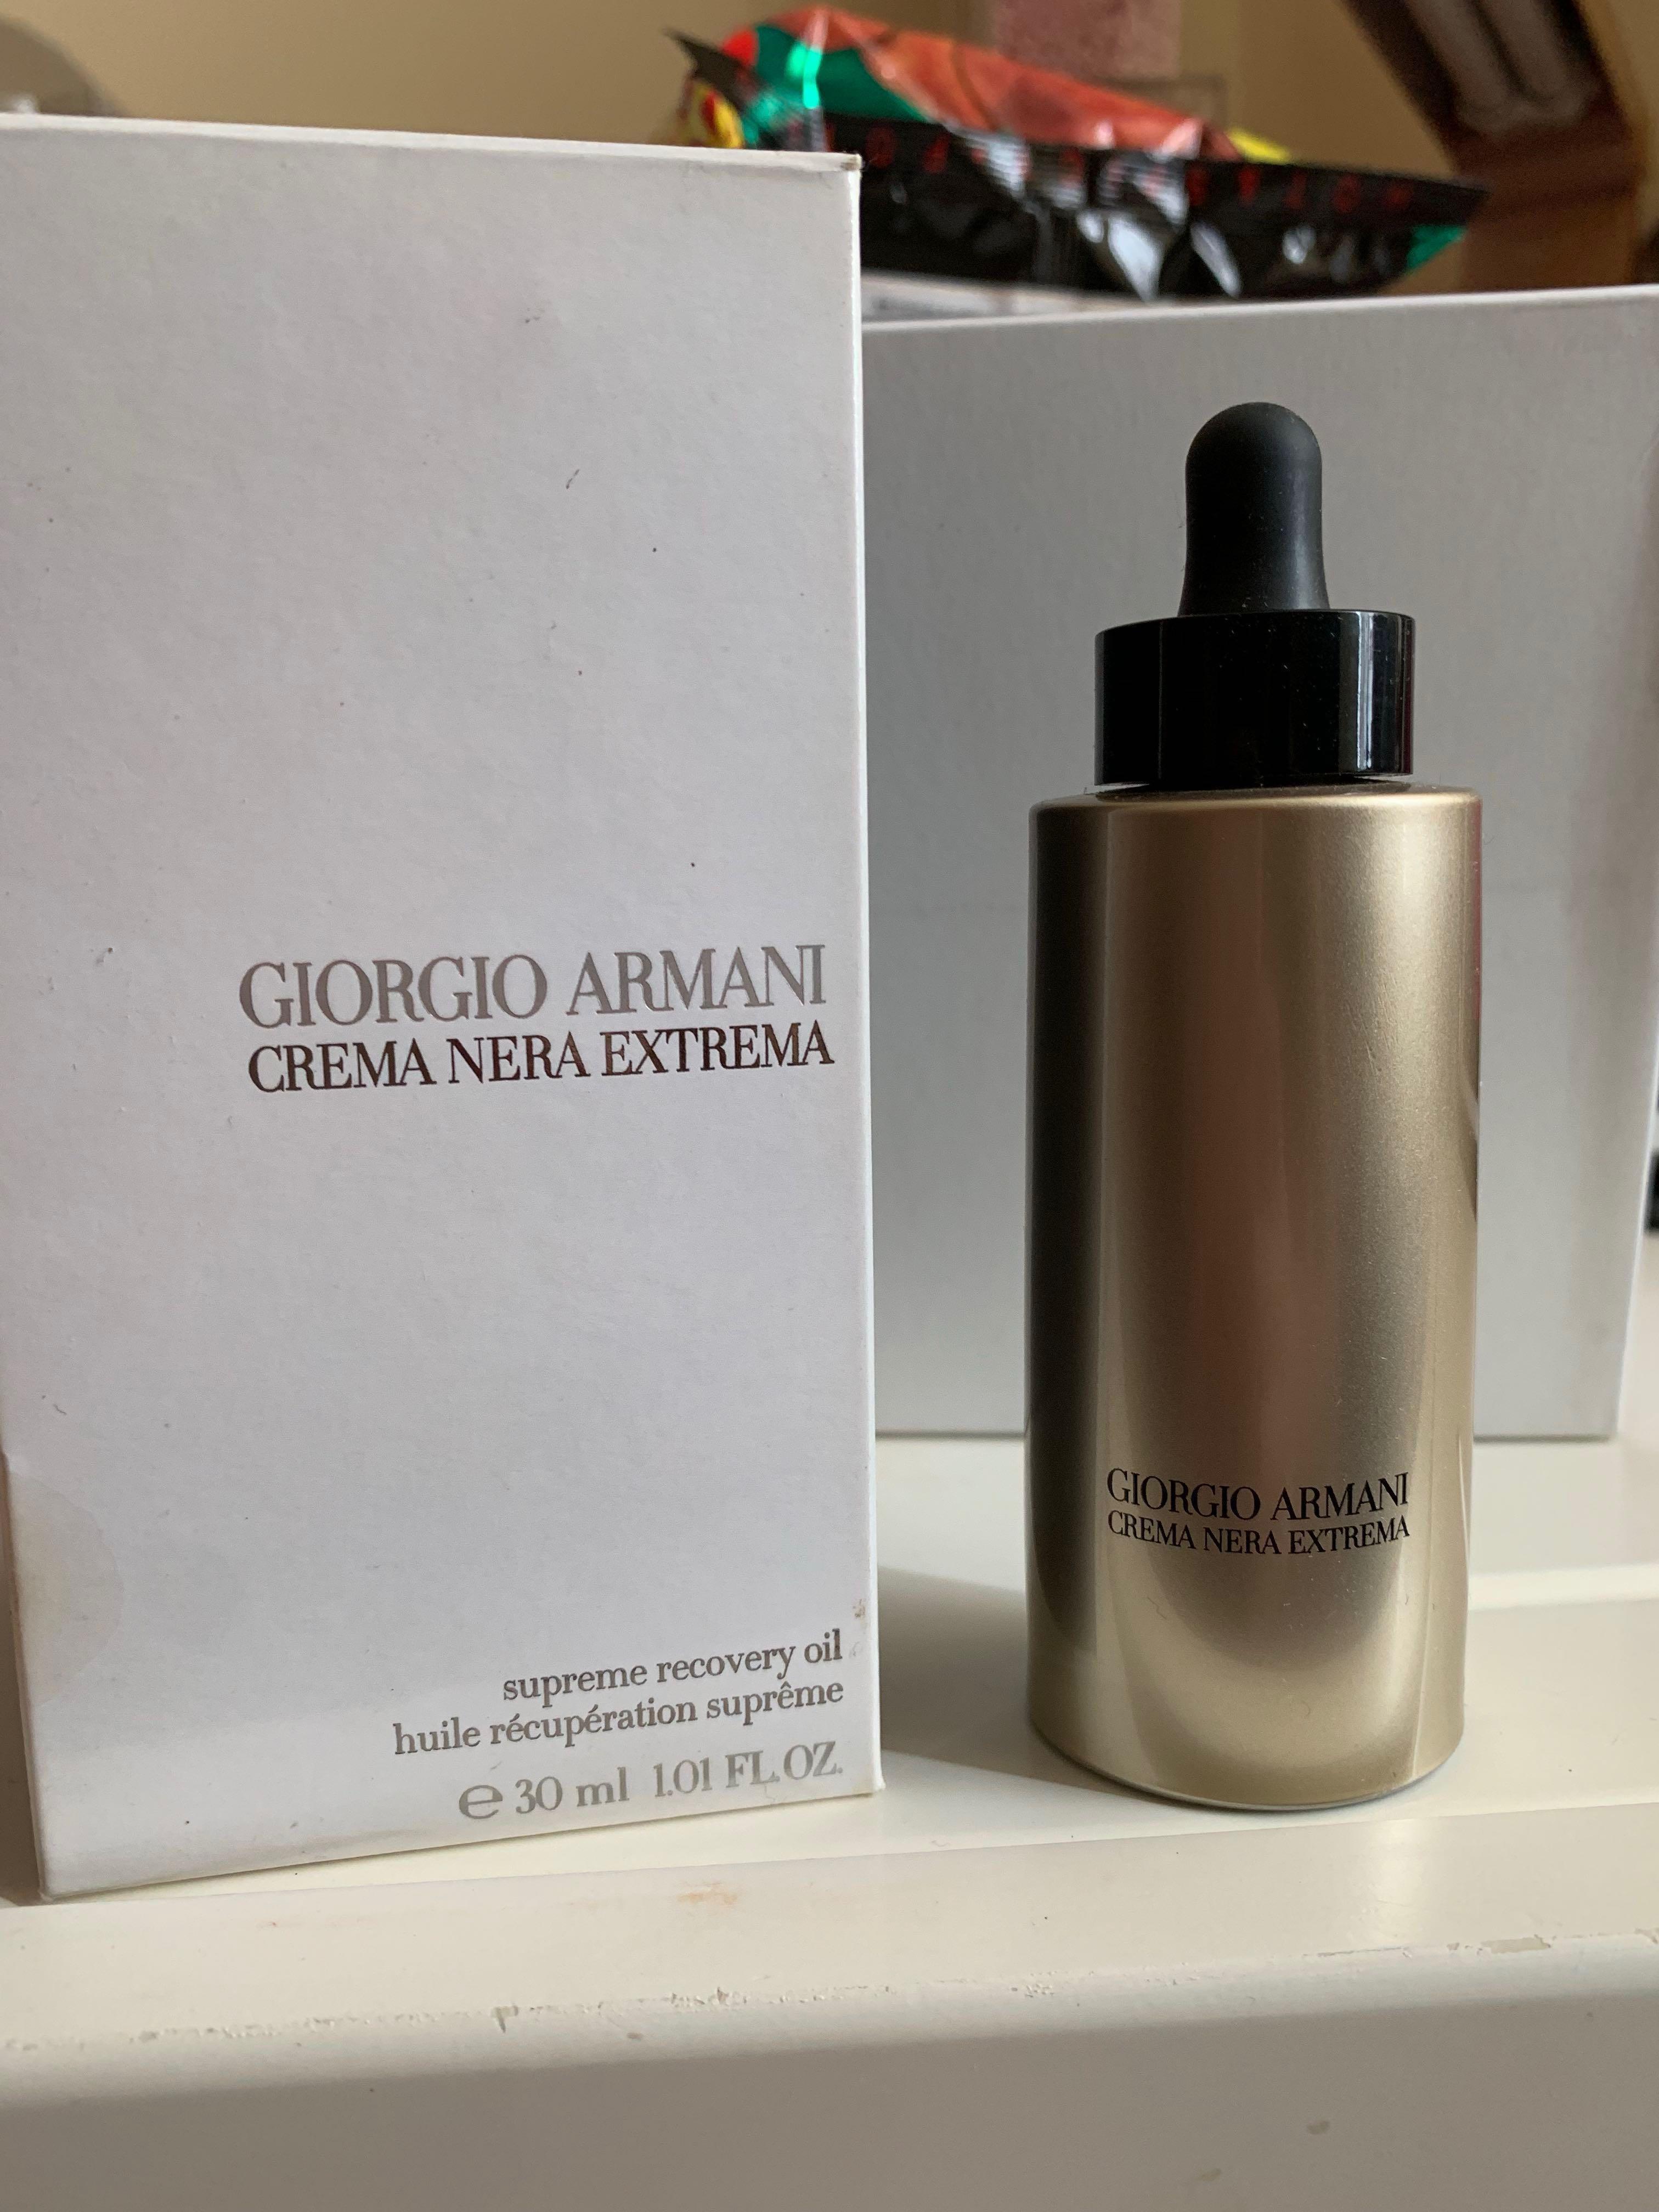 Giorgio Armani Crema Nera Extrema supreme recovery oil 再生修護油, 美容＆化妝品,  健康及美容- 皮膚護理, 面部- 面部護理- Carousell